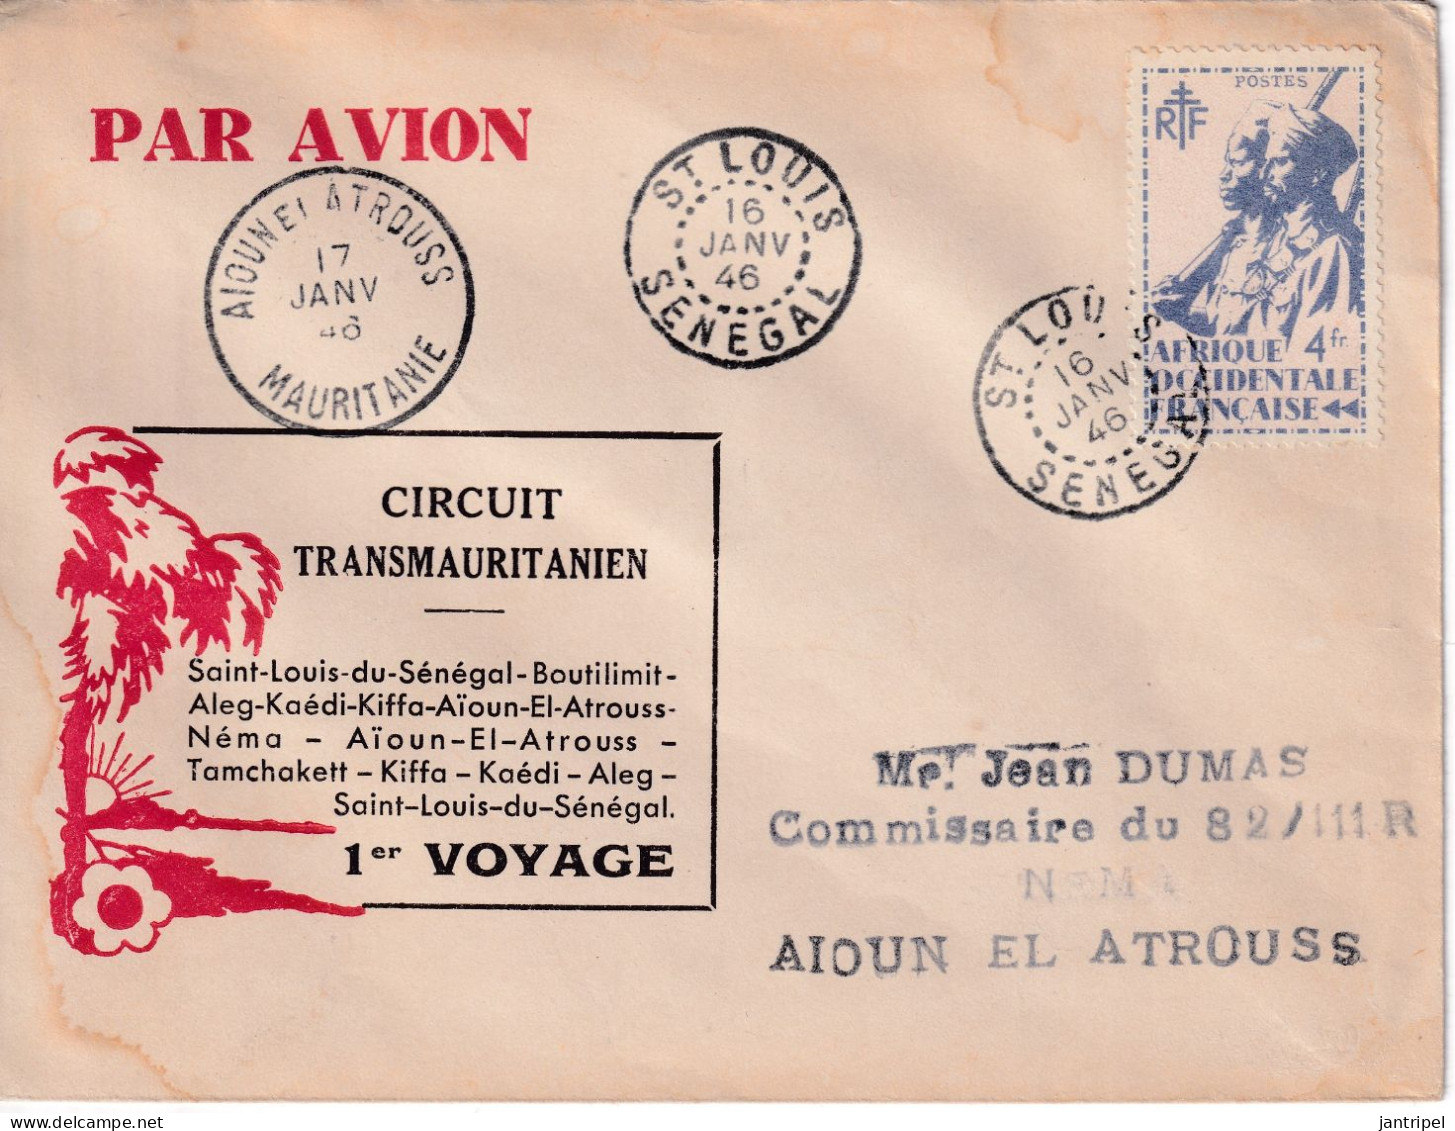 SENEGAL 1946 1er VOYAGE CIRCUIT TRANSMAURITANIEN - Poste Aérienne